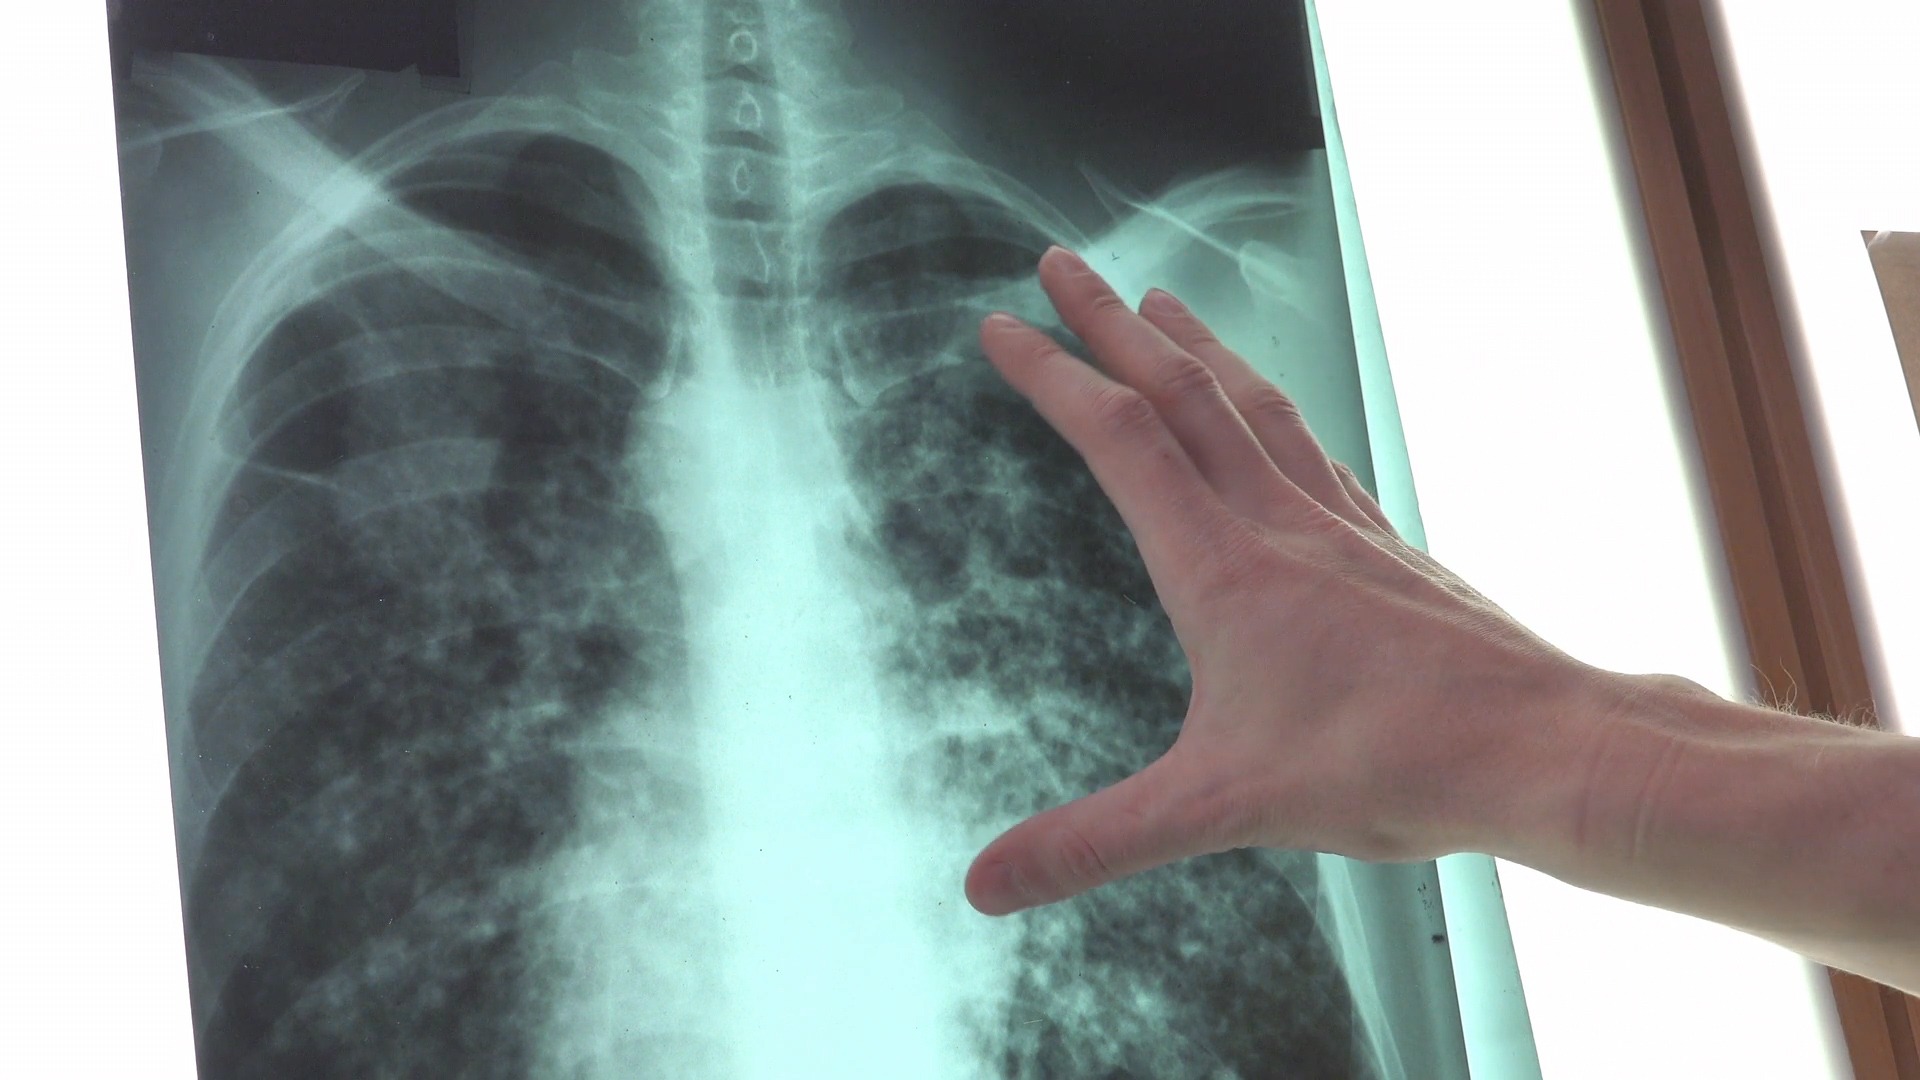 Omeopatia come terapia complementare per carcinoma polmonare: un nuovo studio